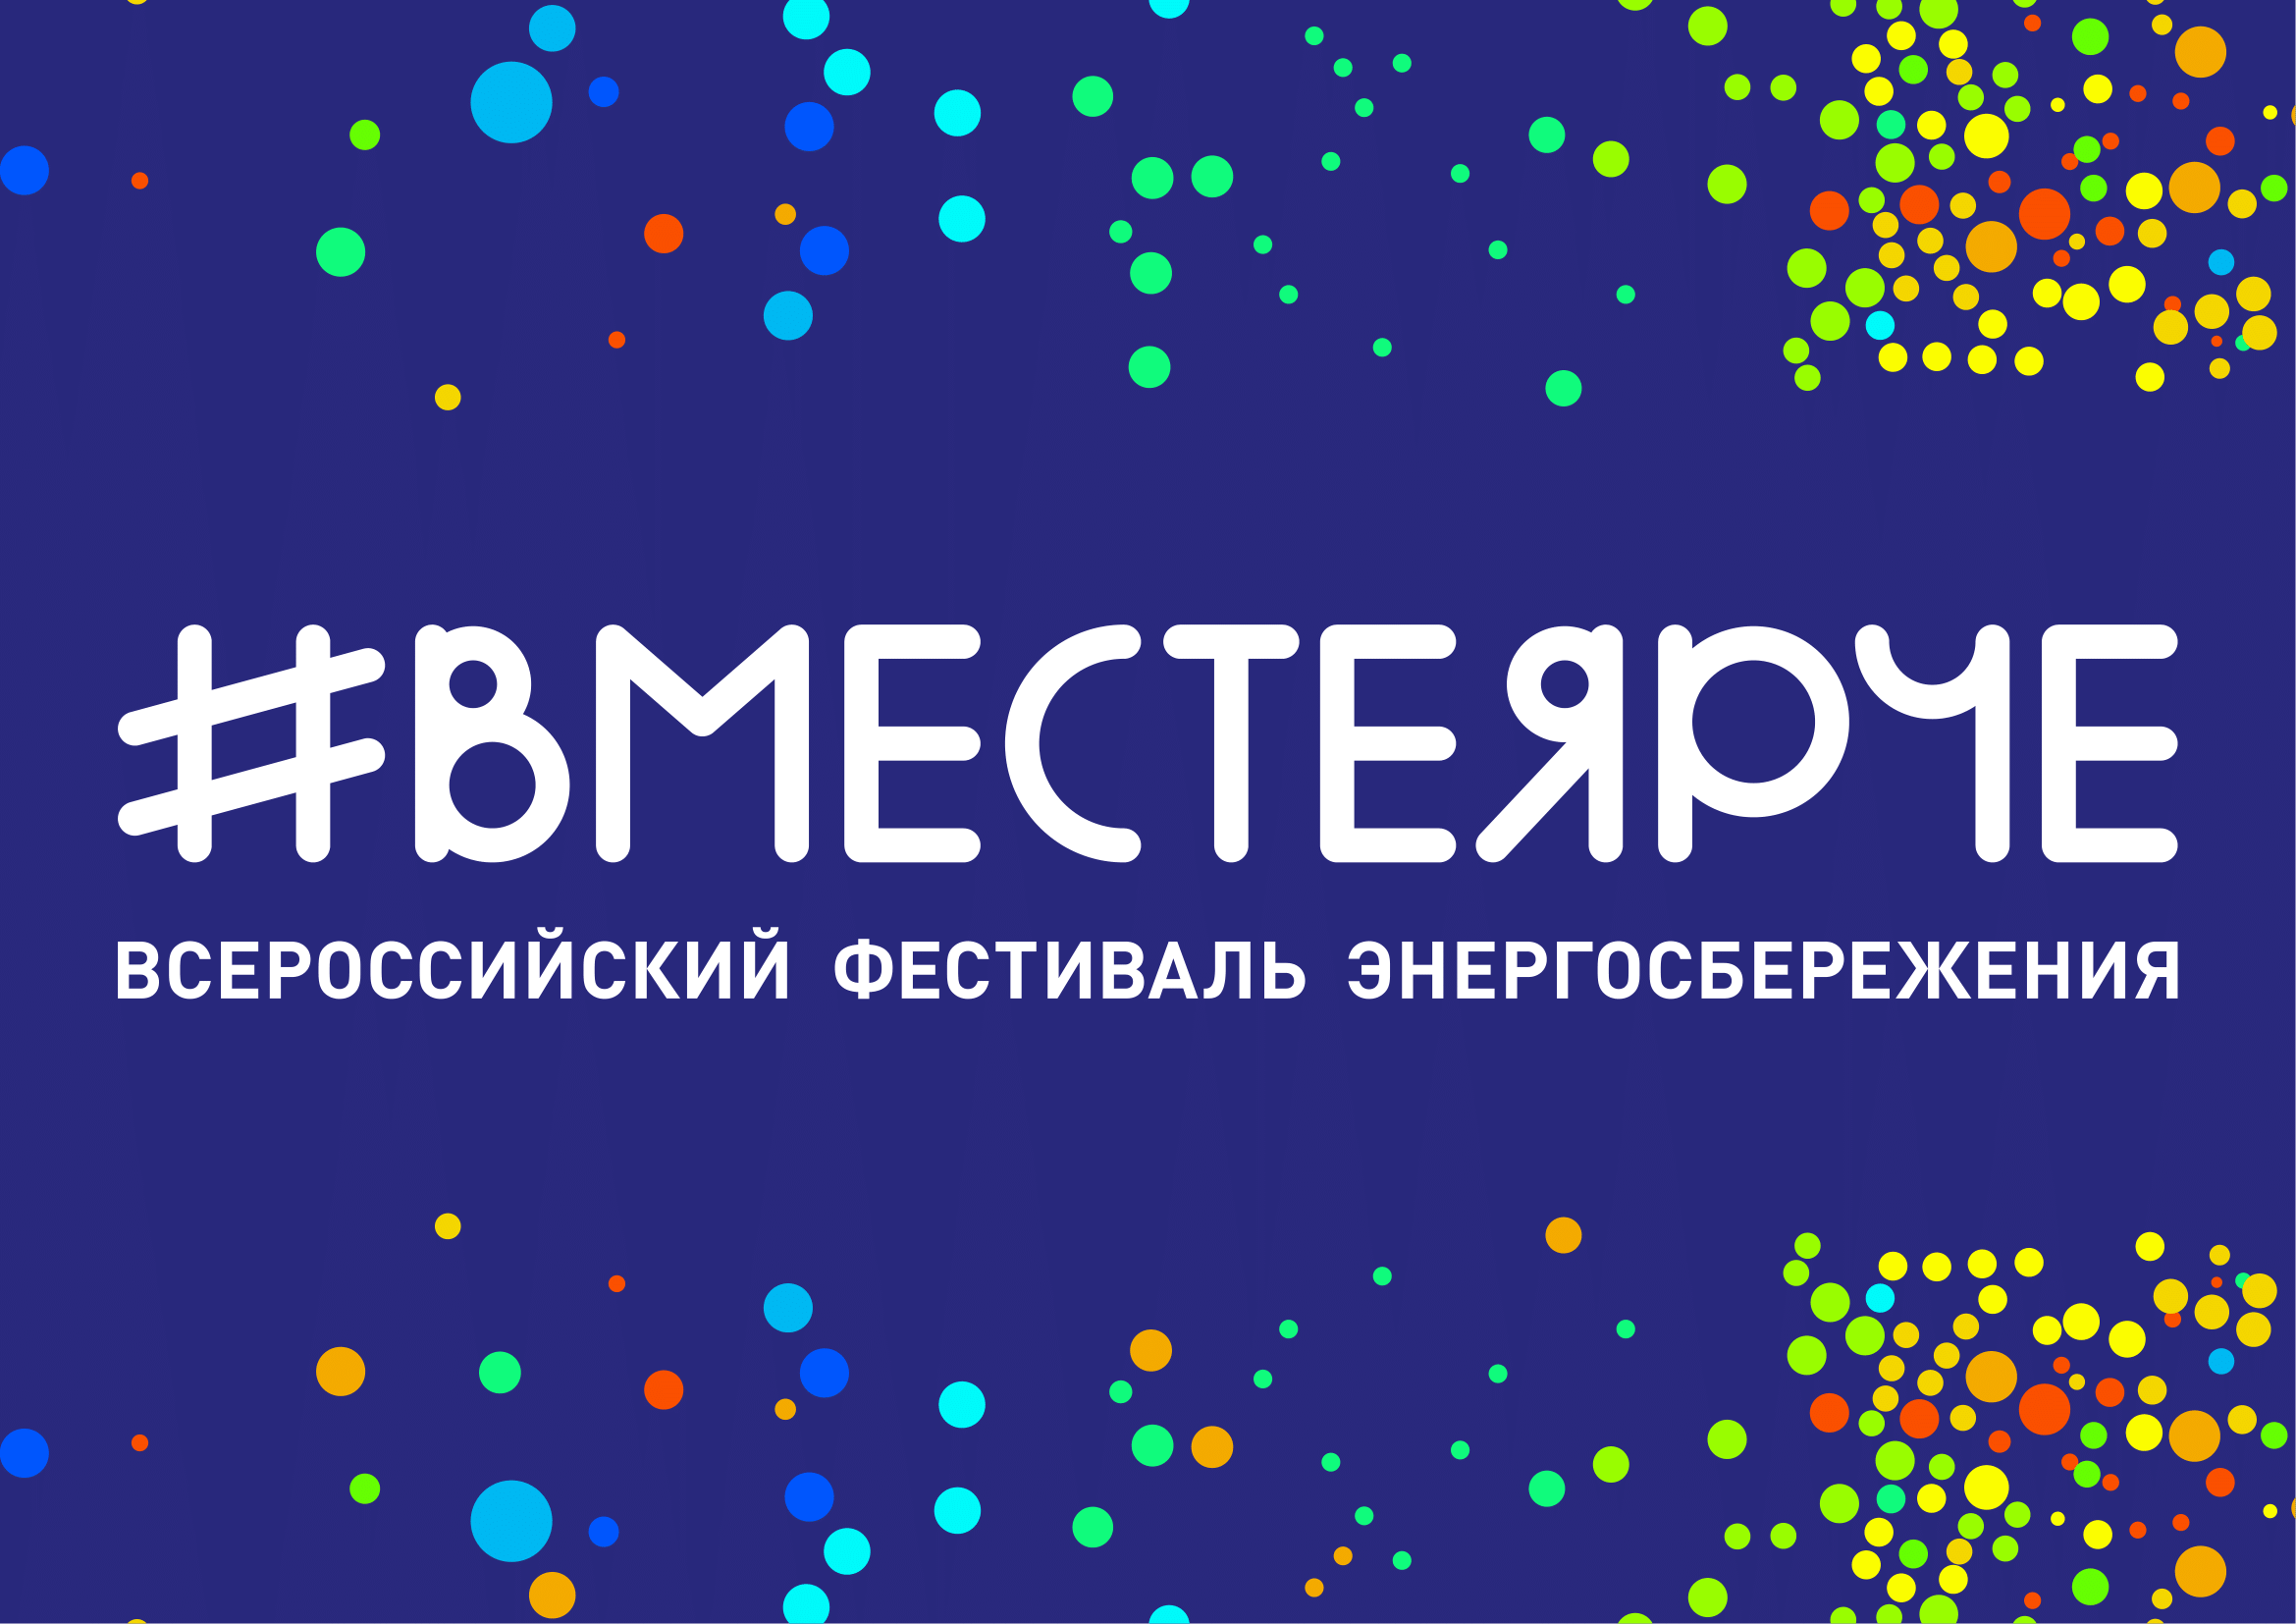 В Калининграде пройдет фестиваль энергосбережения #ВместеЯрче